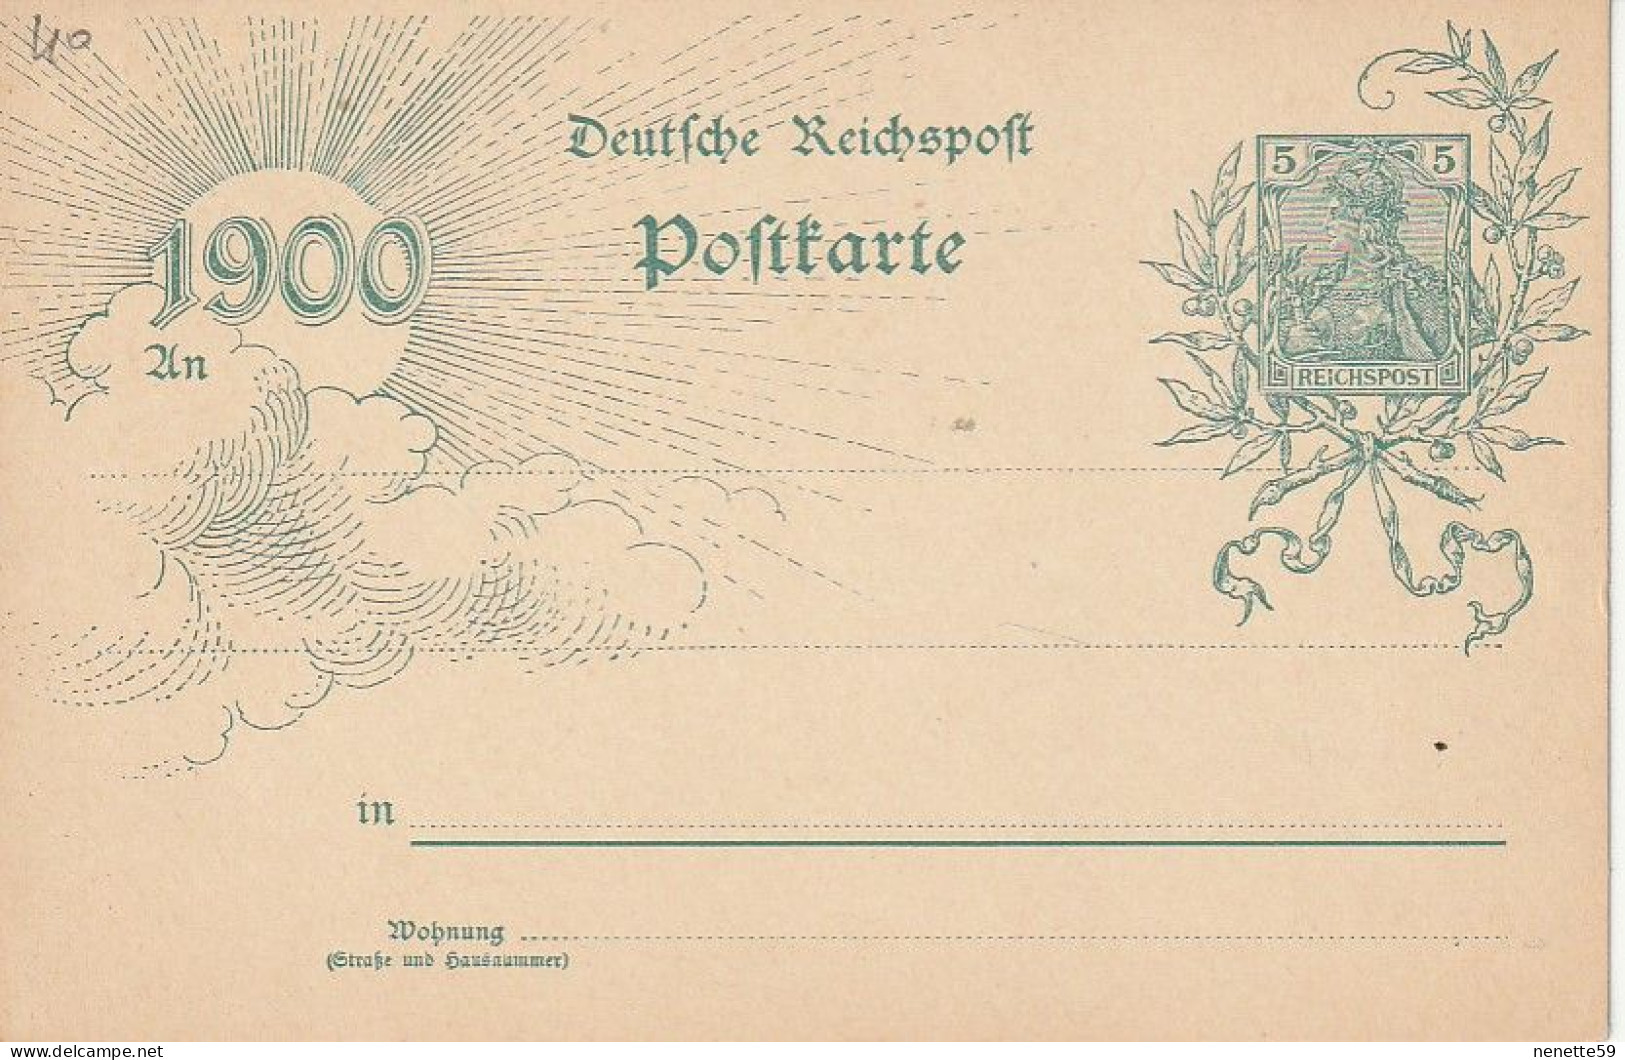 ALLEMAGNE - Entier Postal De 1900 - Deutche Reichspoft Poftkarte 1900 - Postkarten